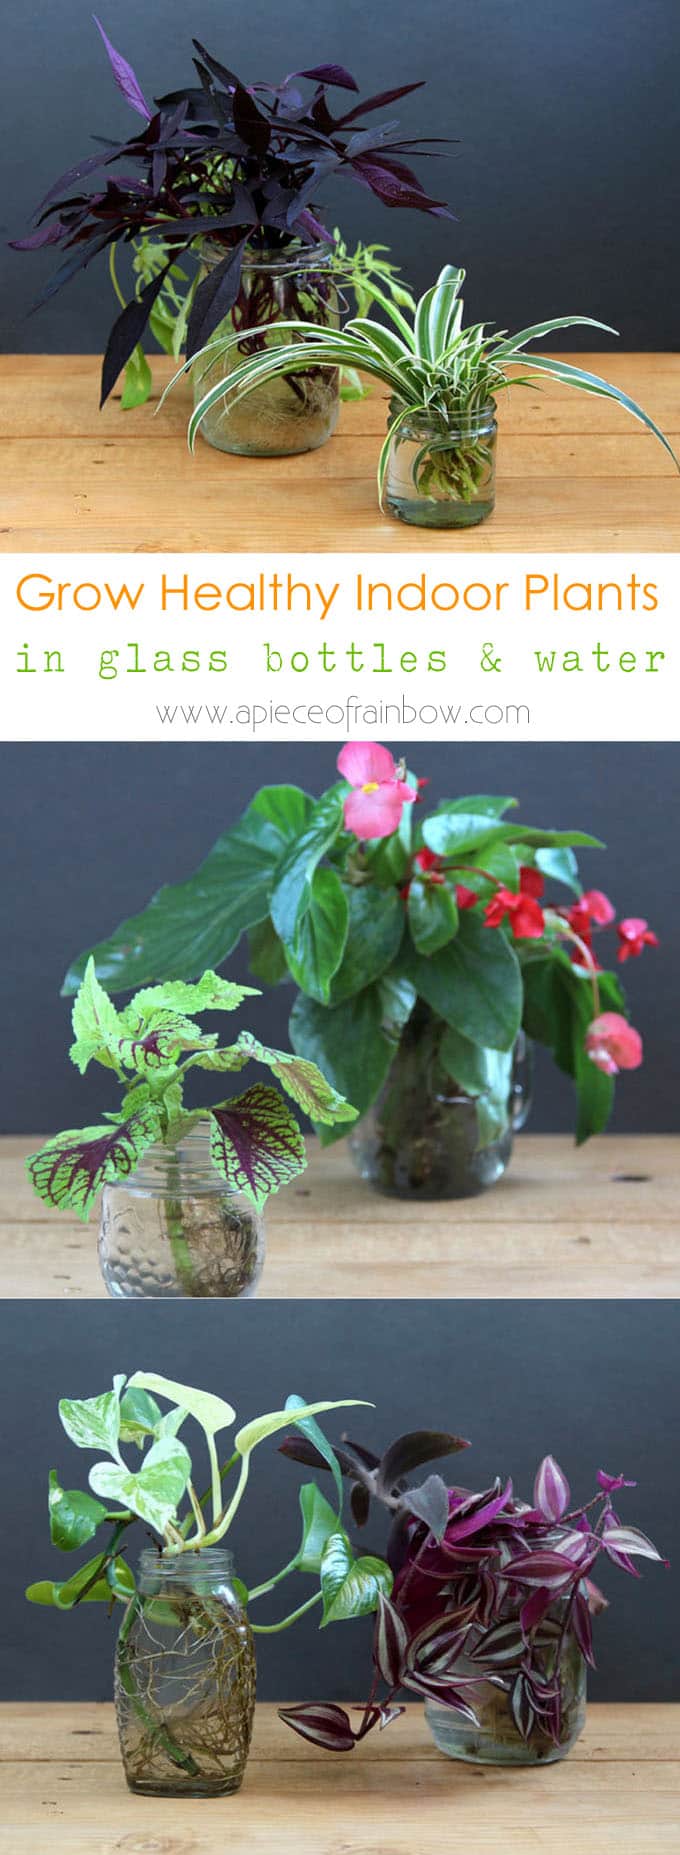 grow-indoor-plants-in-glass-bottles-apieceofrainbow (3)